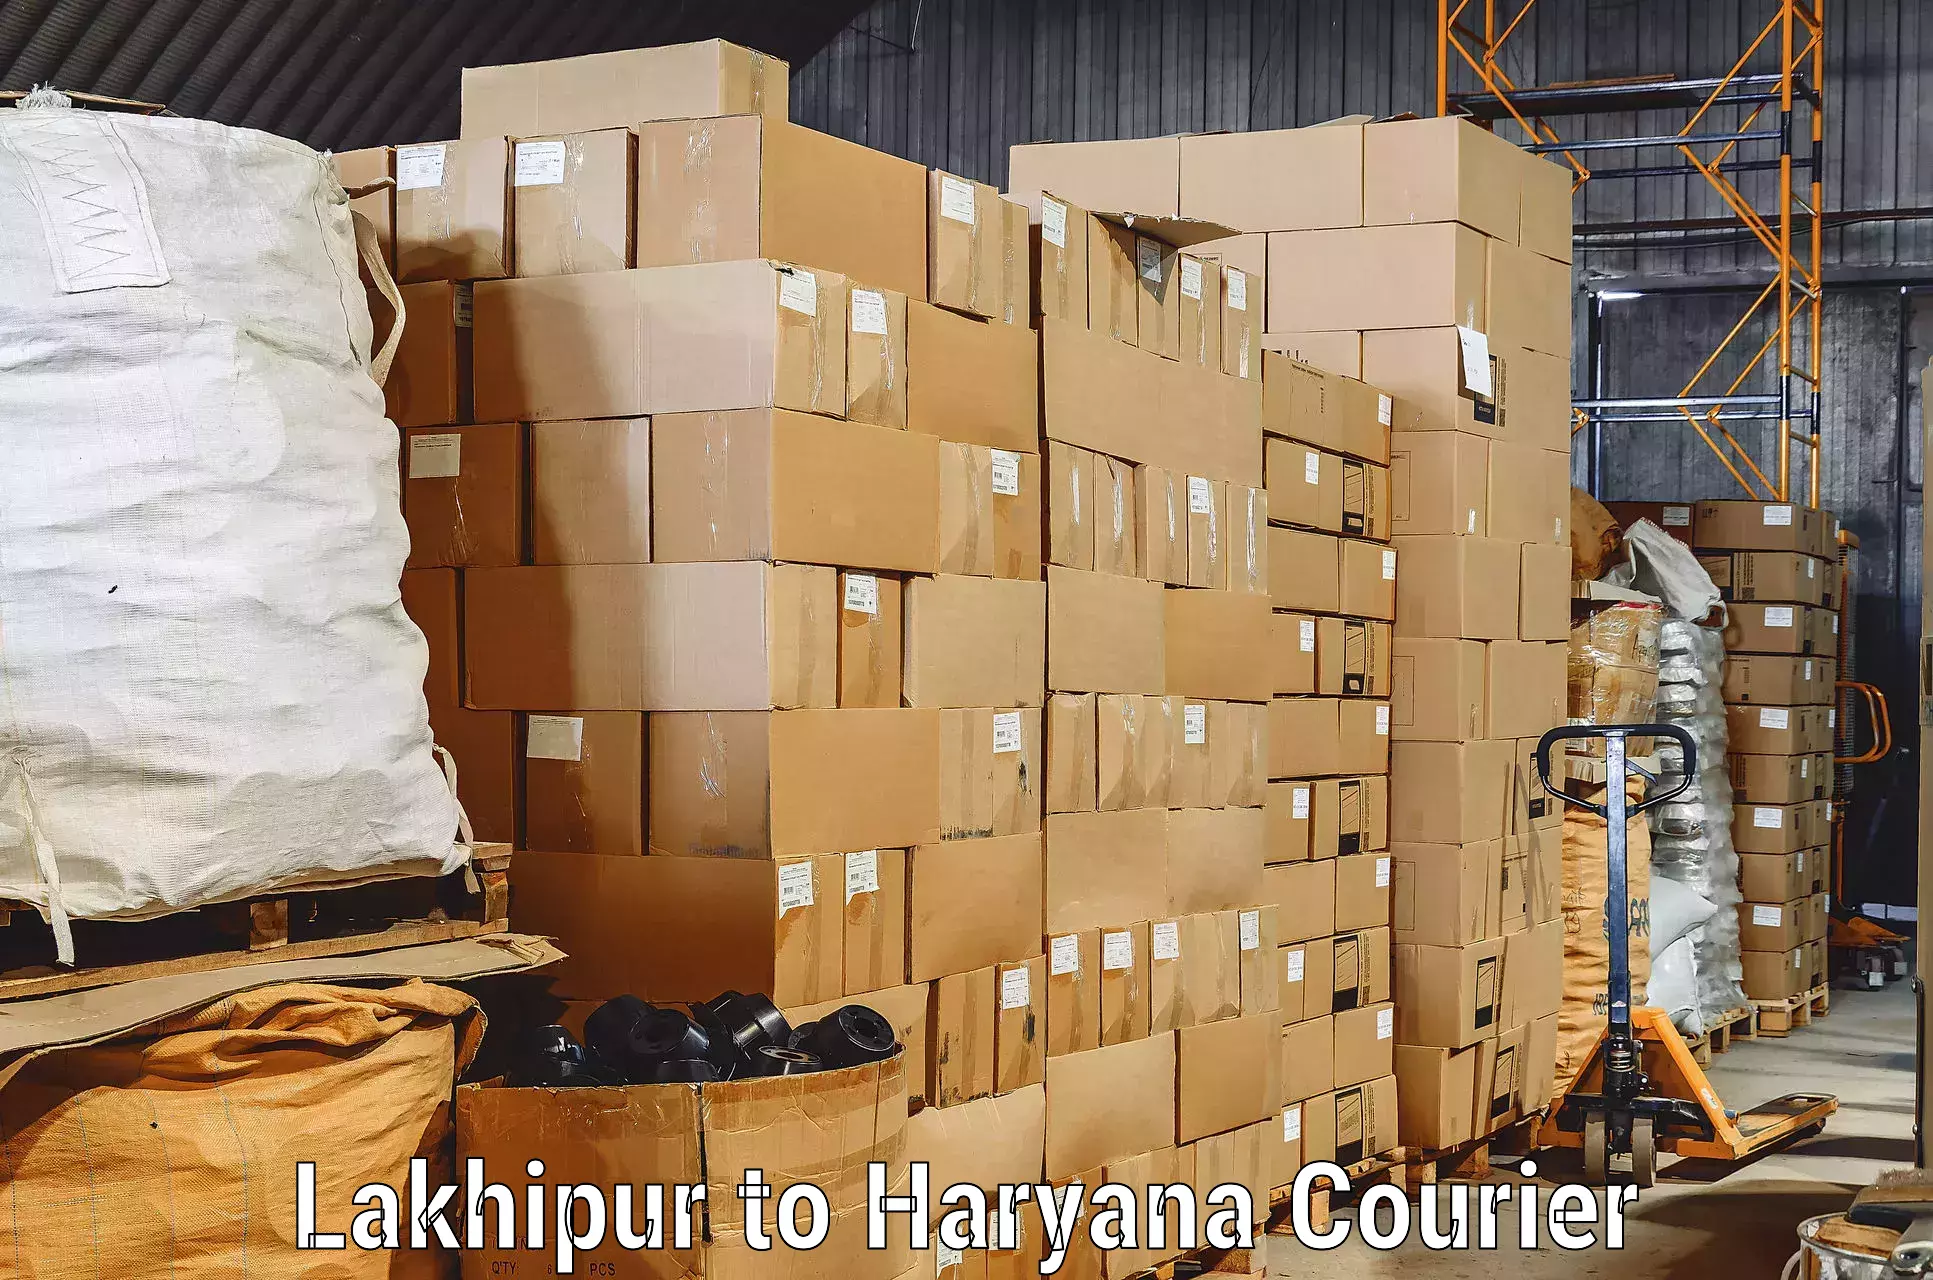 Skilled furniture movers Lakhipur to Dharuhera